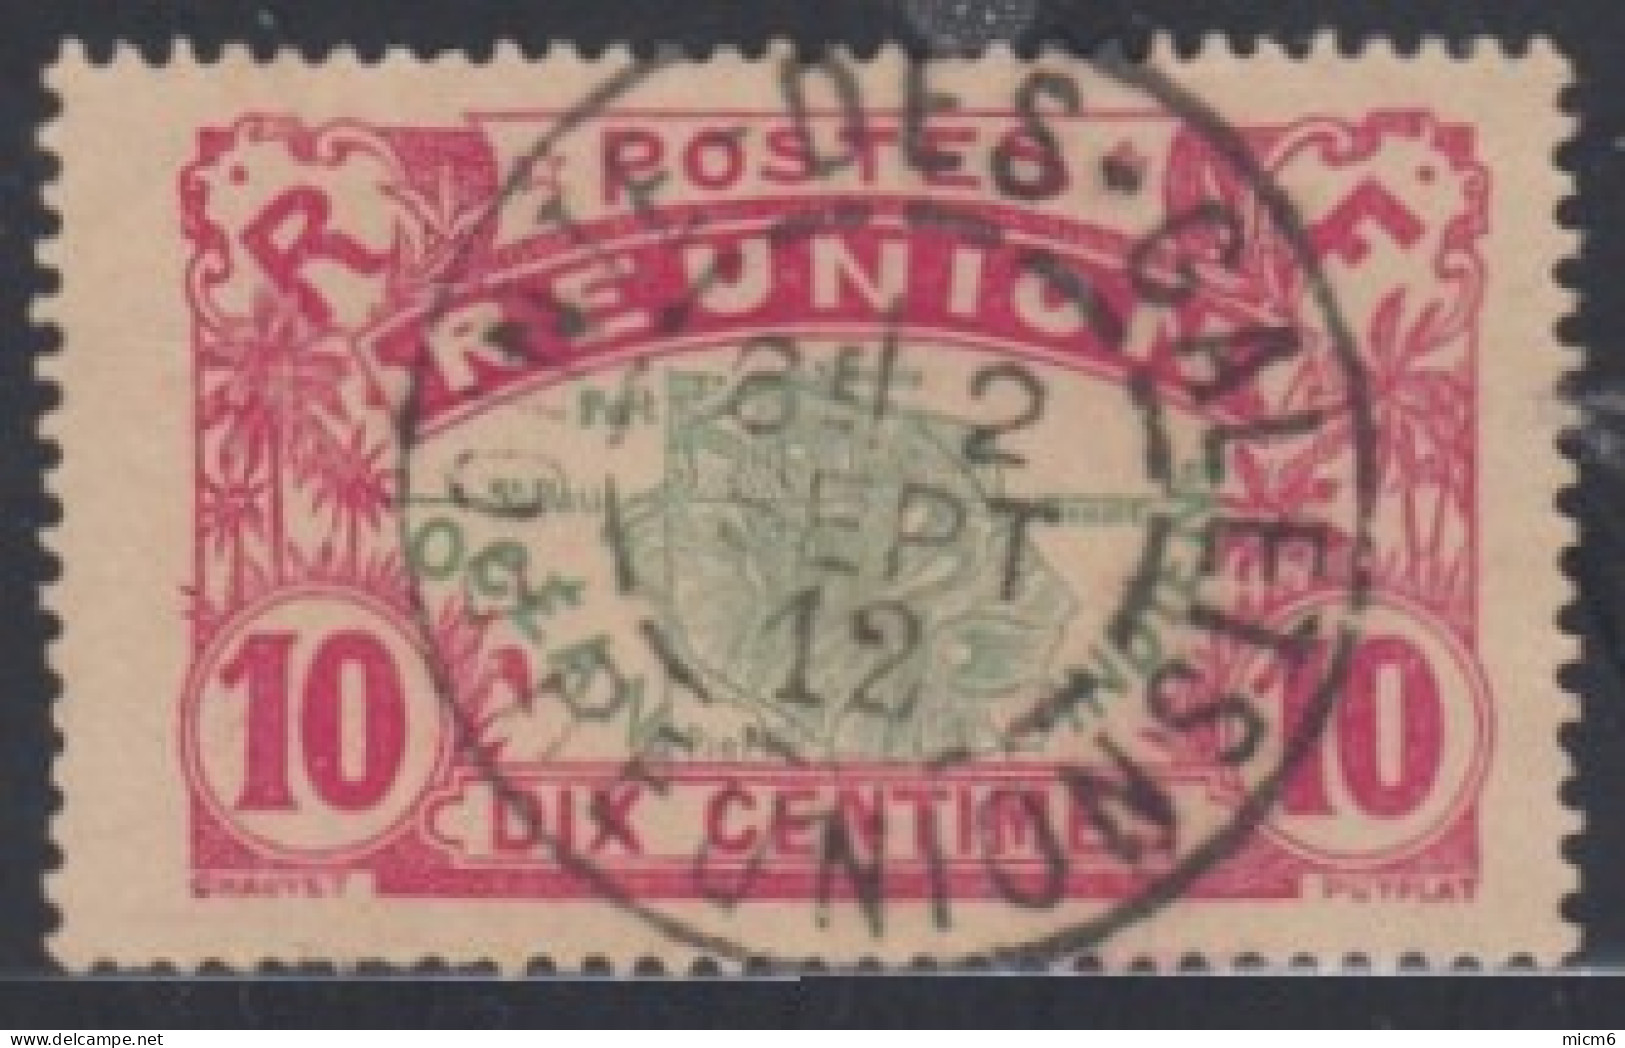 Réunion 1907-1930 - Pointe Des Galets Sur N° 60 (YT) N° 60 (AM). Oblitération De 1912. - Used Stamps